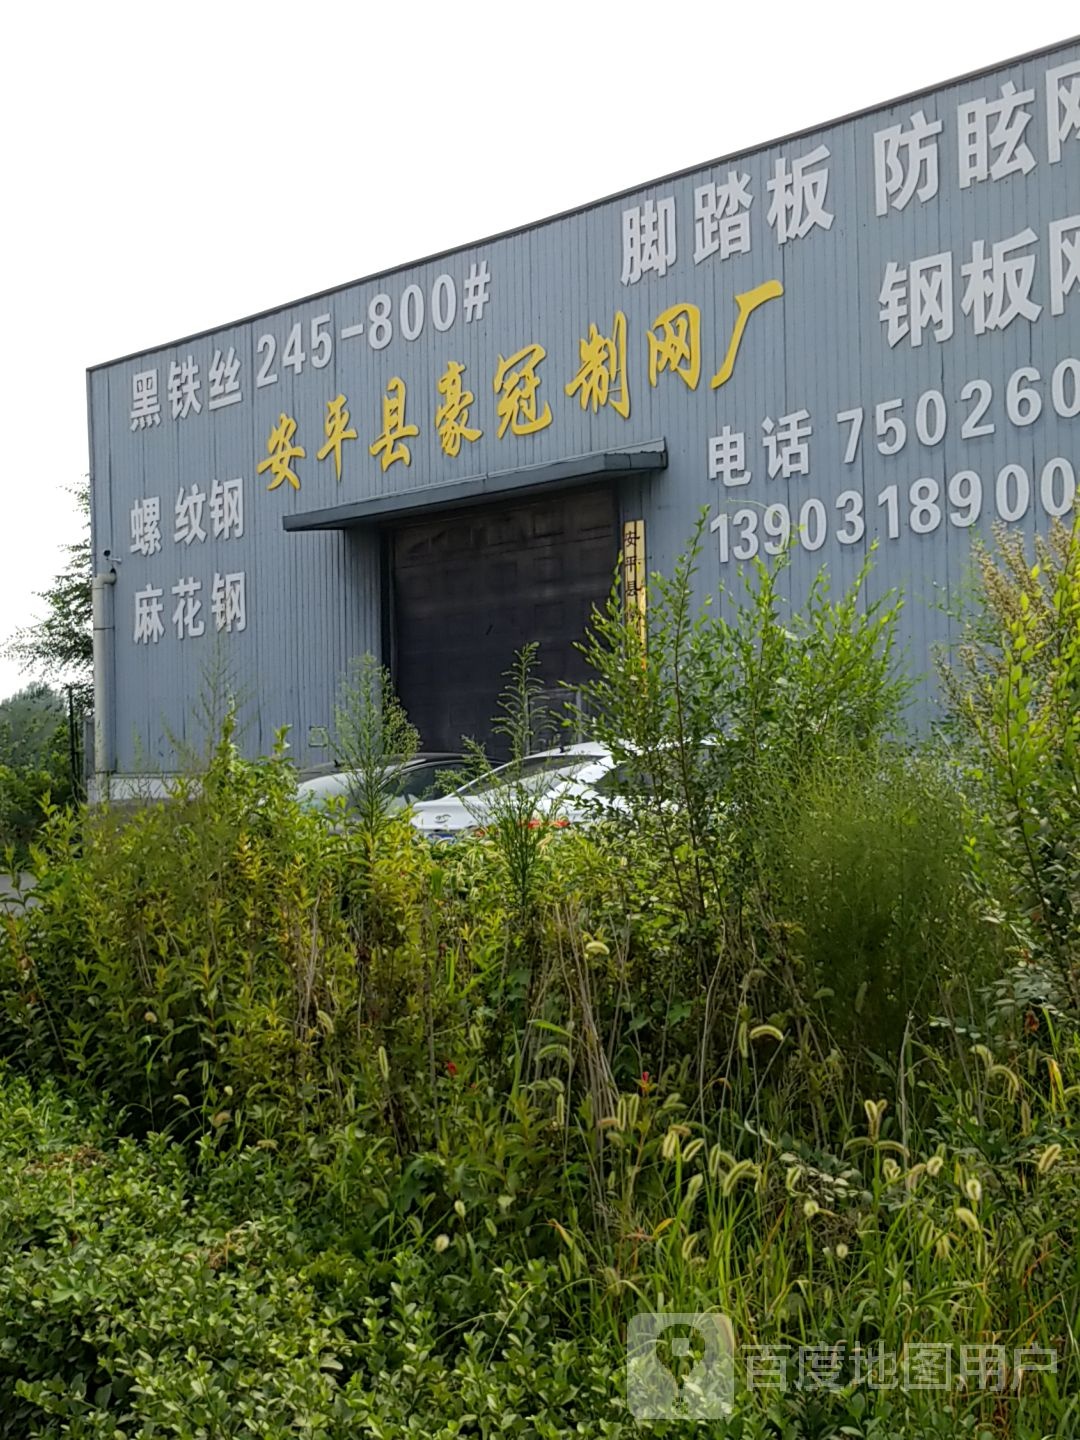 河北省衡水市安平县安平镇S231(旧)鑫洲丝网厂附近